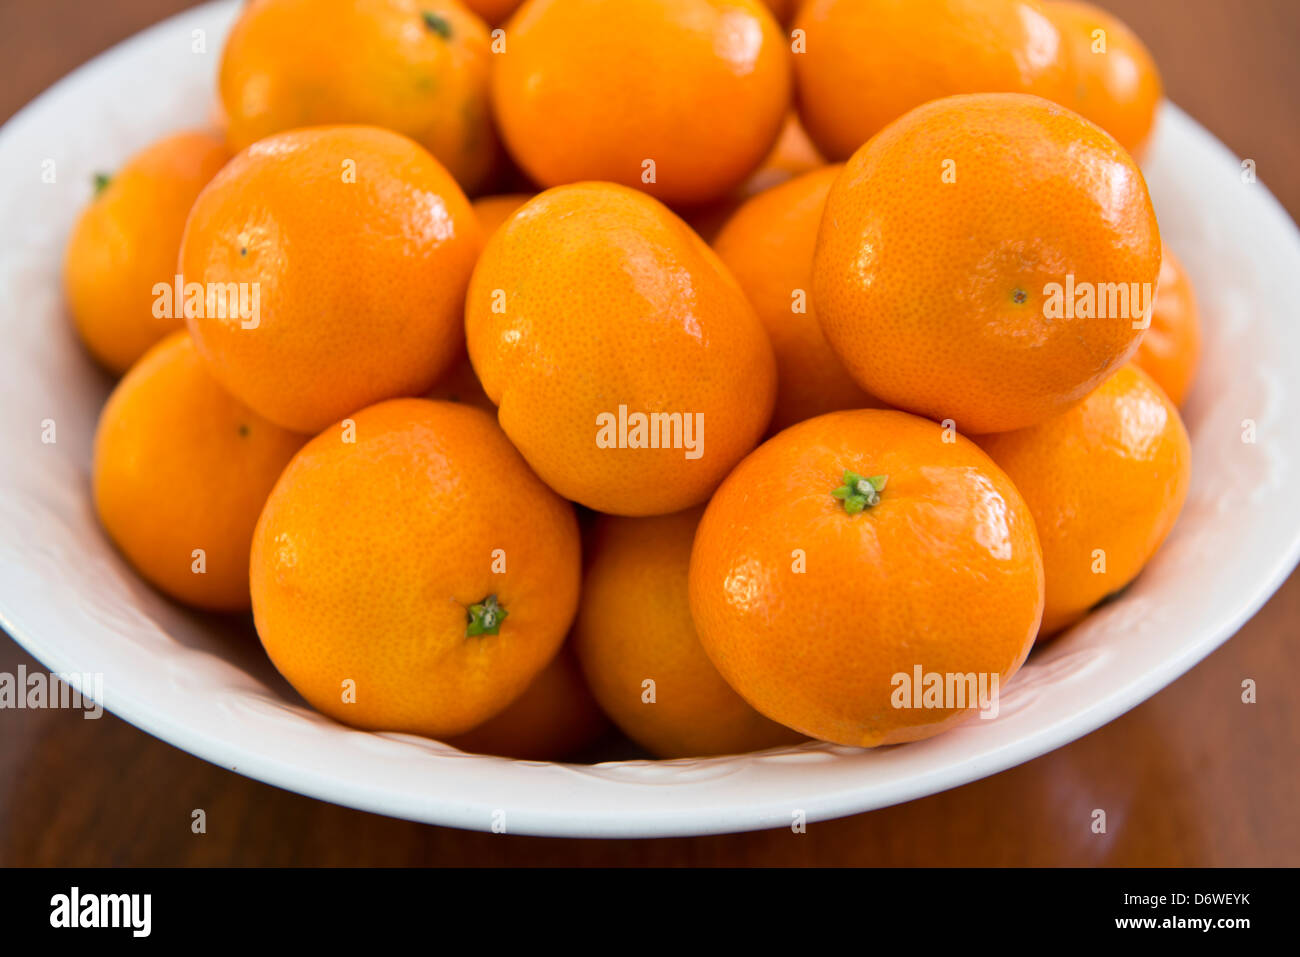 Oranges, clémentines une variété de mandarine, Citrus reticulata, dans un bol blanc, assis sur une table en bois. Libre. Banque D'Images